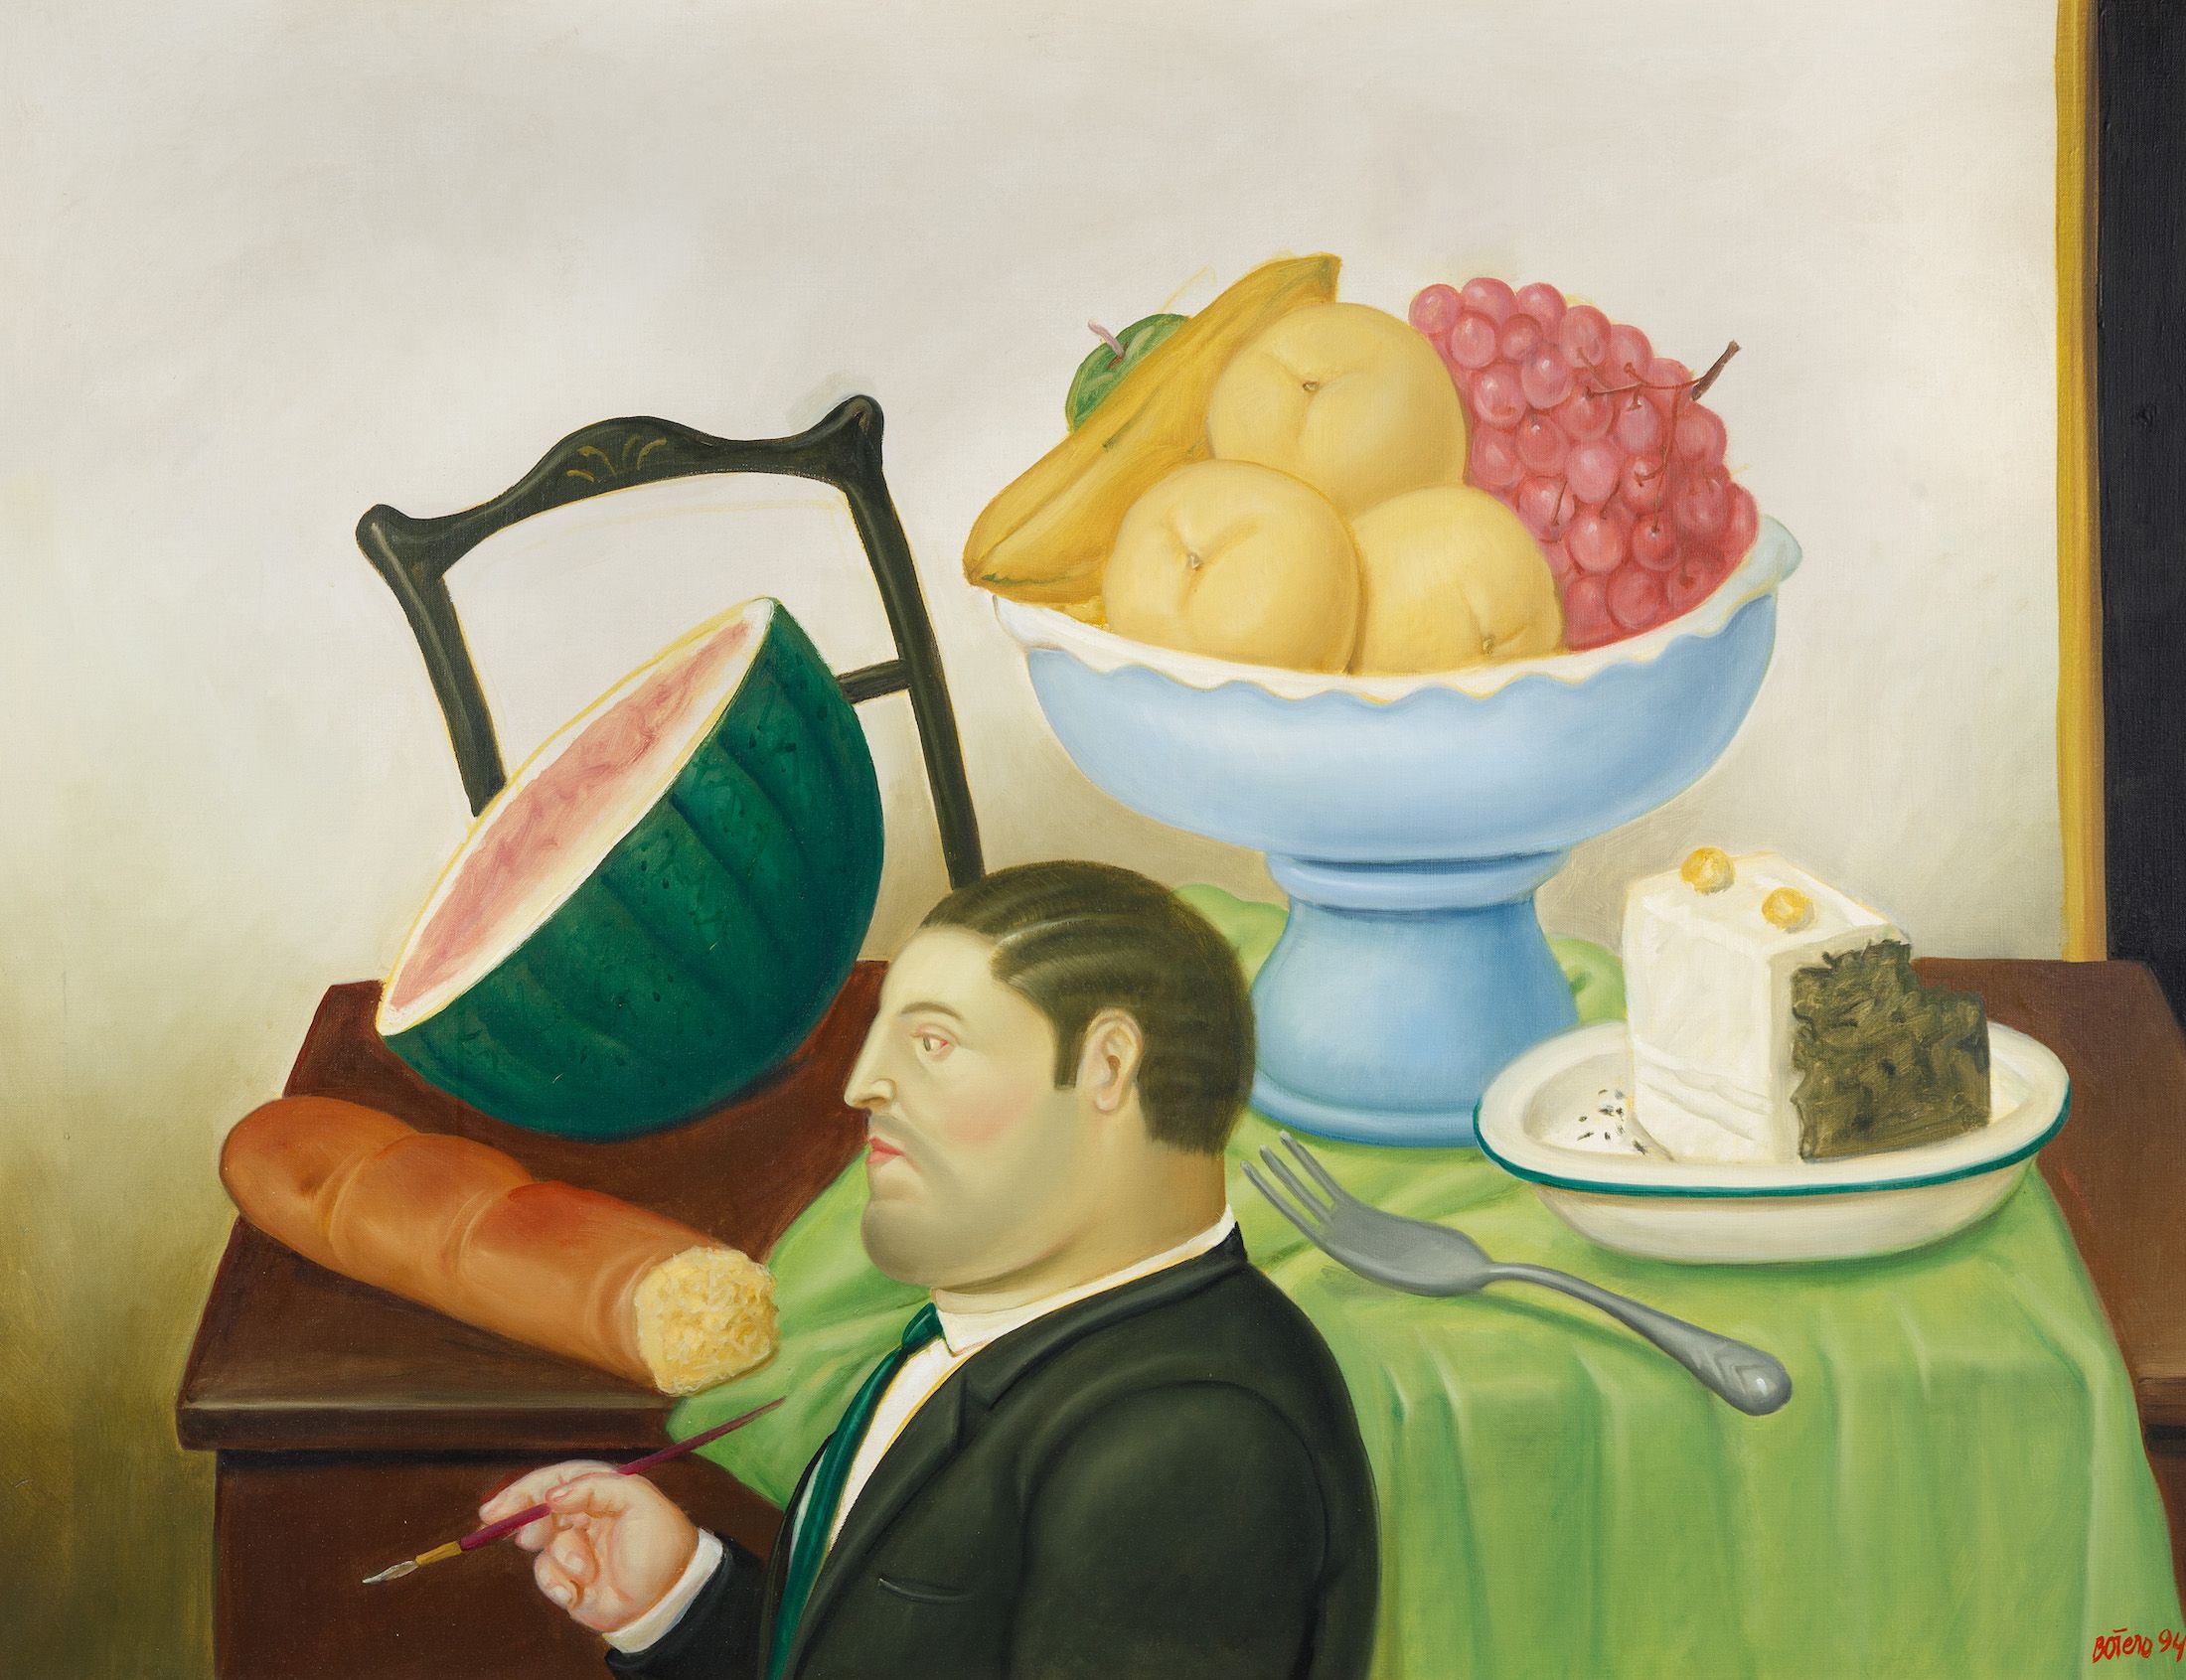 Lot #1 Fernando Botero, Painter Of Still Lives